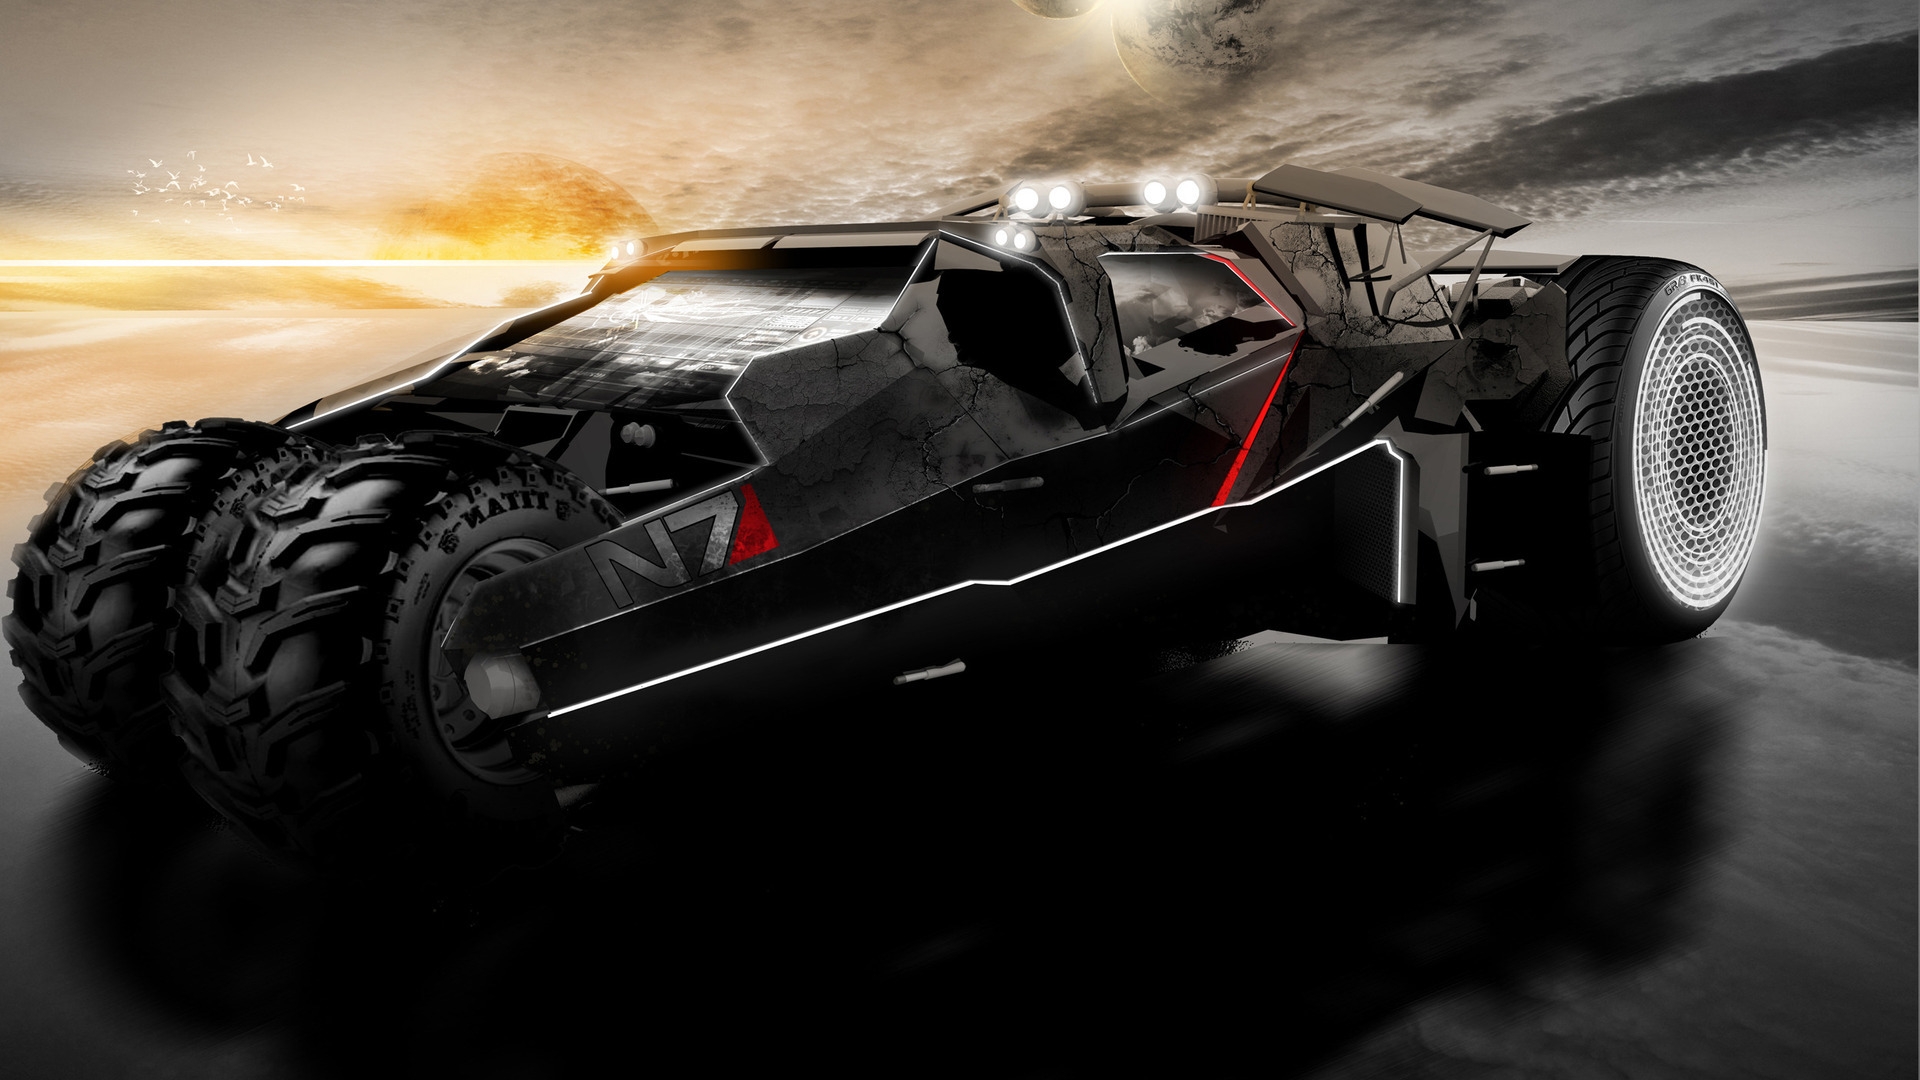 Mass Effect 2 Car for 1920 x 1080 HDTV 1080p resolution